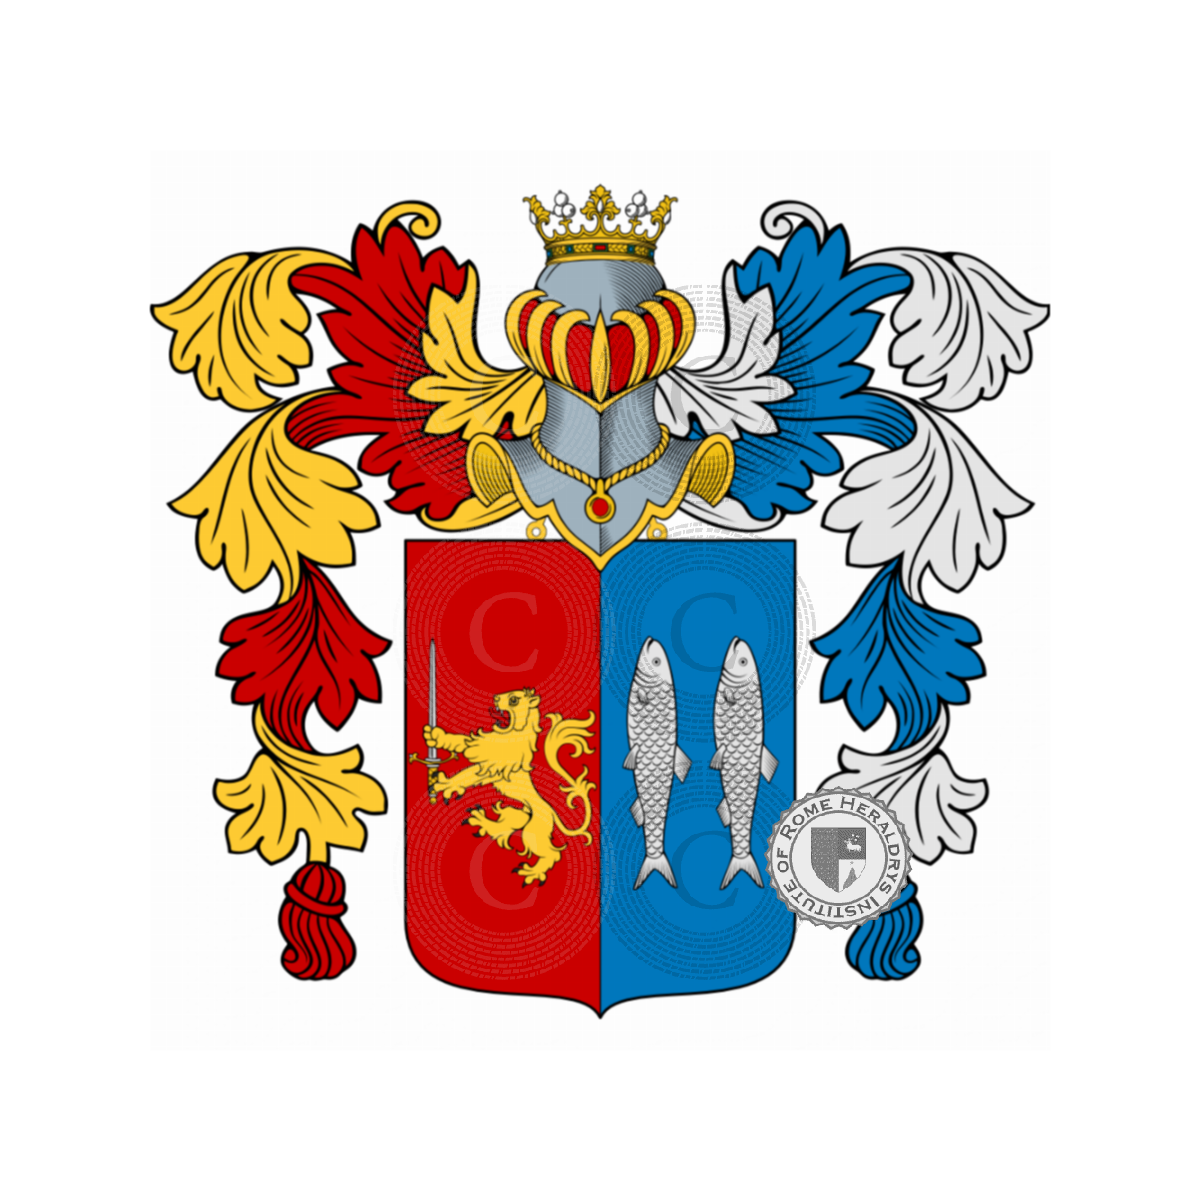 Escudo de la familiaMancini, Bernardino il Mancino,Mancini del Lion Rosso,Mancini di Lorenzo,Mancino